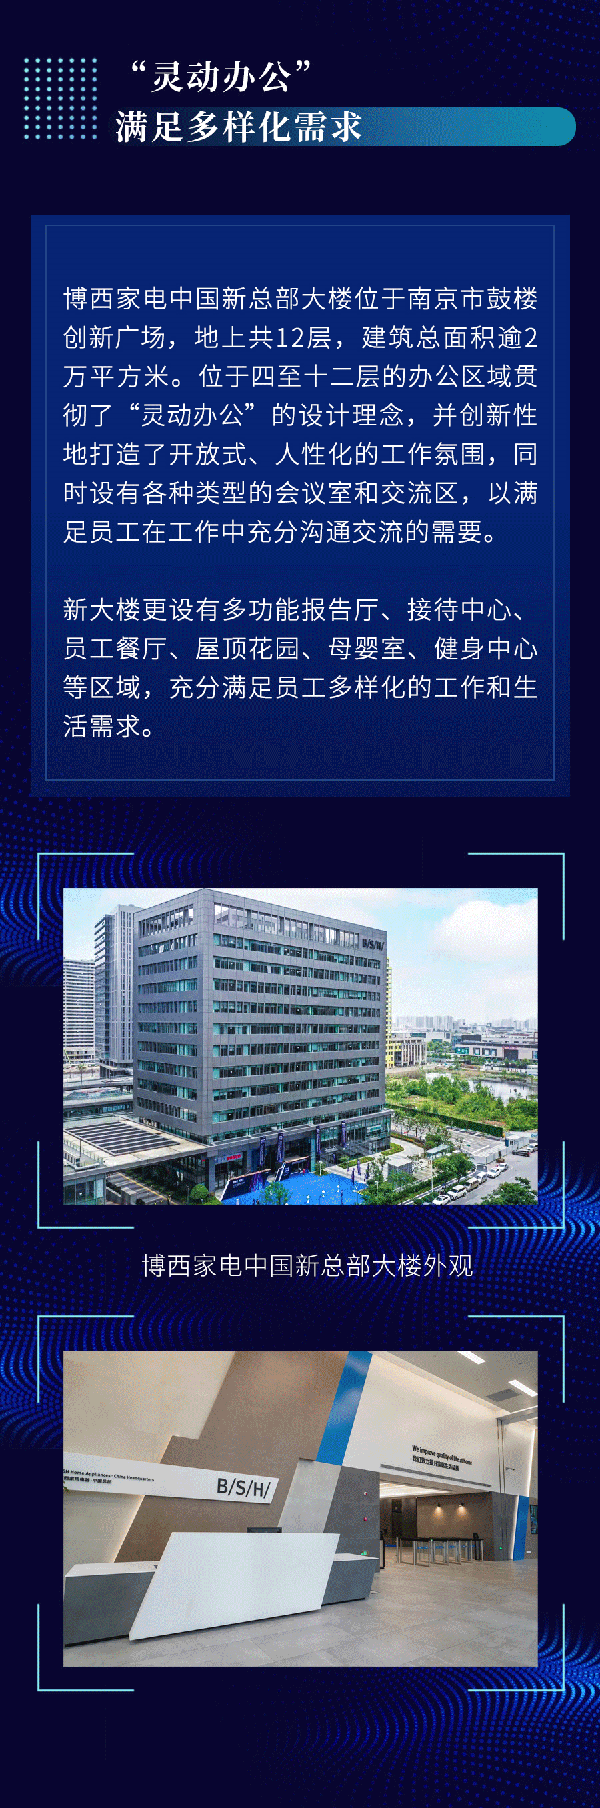 博西家电中国新总部大楼正式启用  书写在华发展崭新篇章